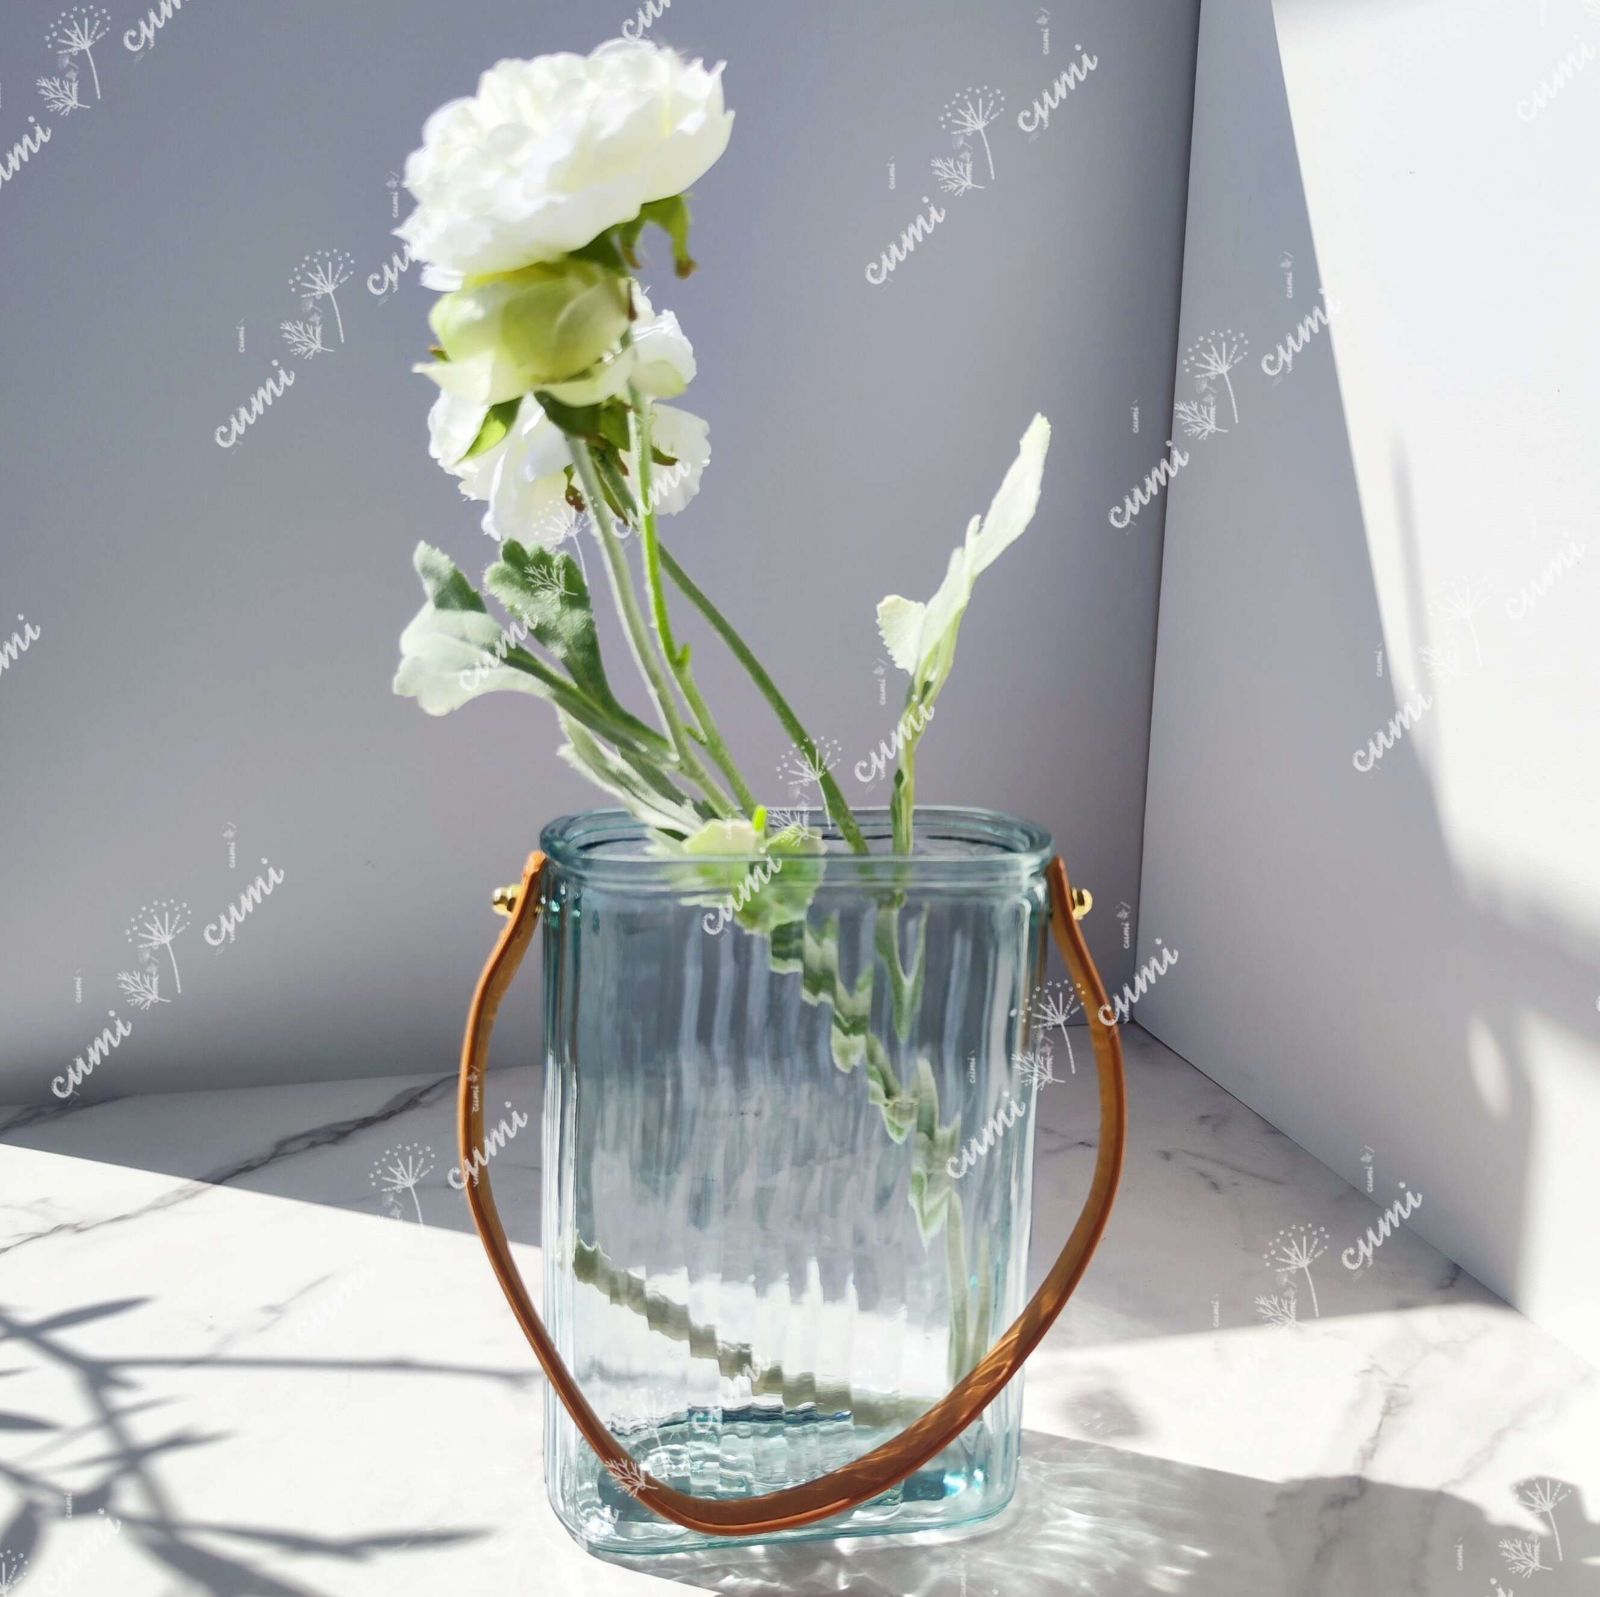 水色 ハンドル付き 一輪挿し ガラス 花瓶 フラワーベース クリスタル インテリア おしゃれ 透明 クリア キラキラ 限定 一輪挿し 高級 おしゃれ  室内 激安 レア プレゼント 海外 おすすめ 人気 デザイン 観葉植物